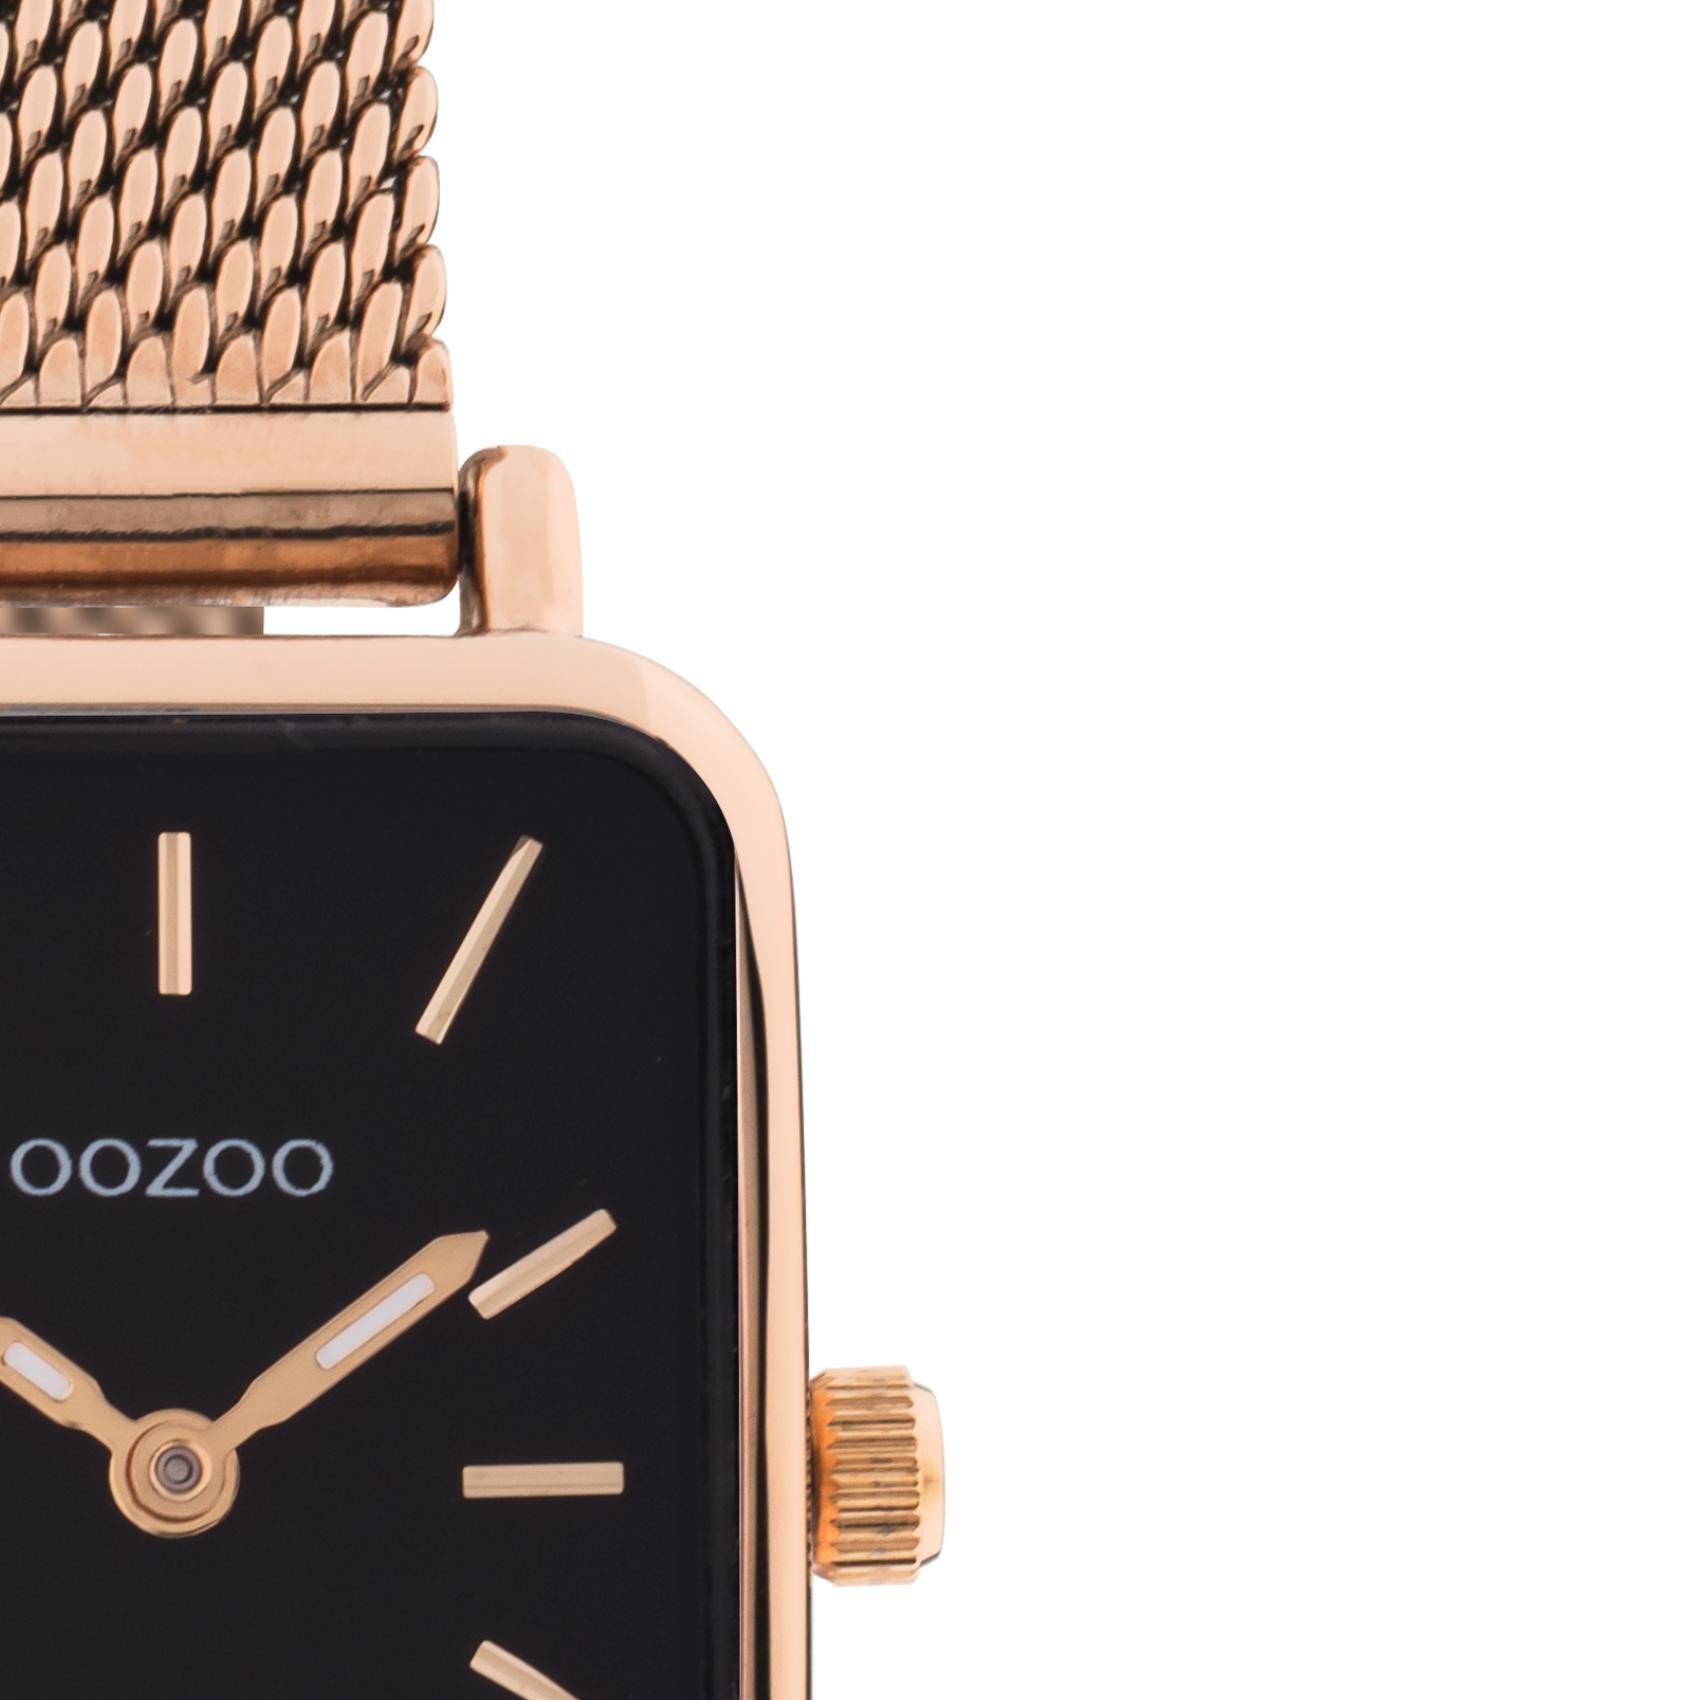 Τετράγωνο ρολόι Oozoo Vintage C20270 με ροζ χρυσό ατσάλινο μπρασελέ,μαύρο καντράν διαστάσεων 21x26mm και μηχανισμό μπαταρίας quartz.